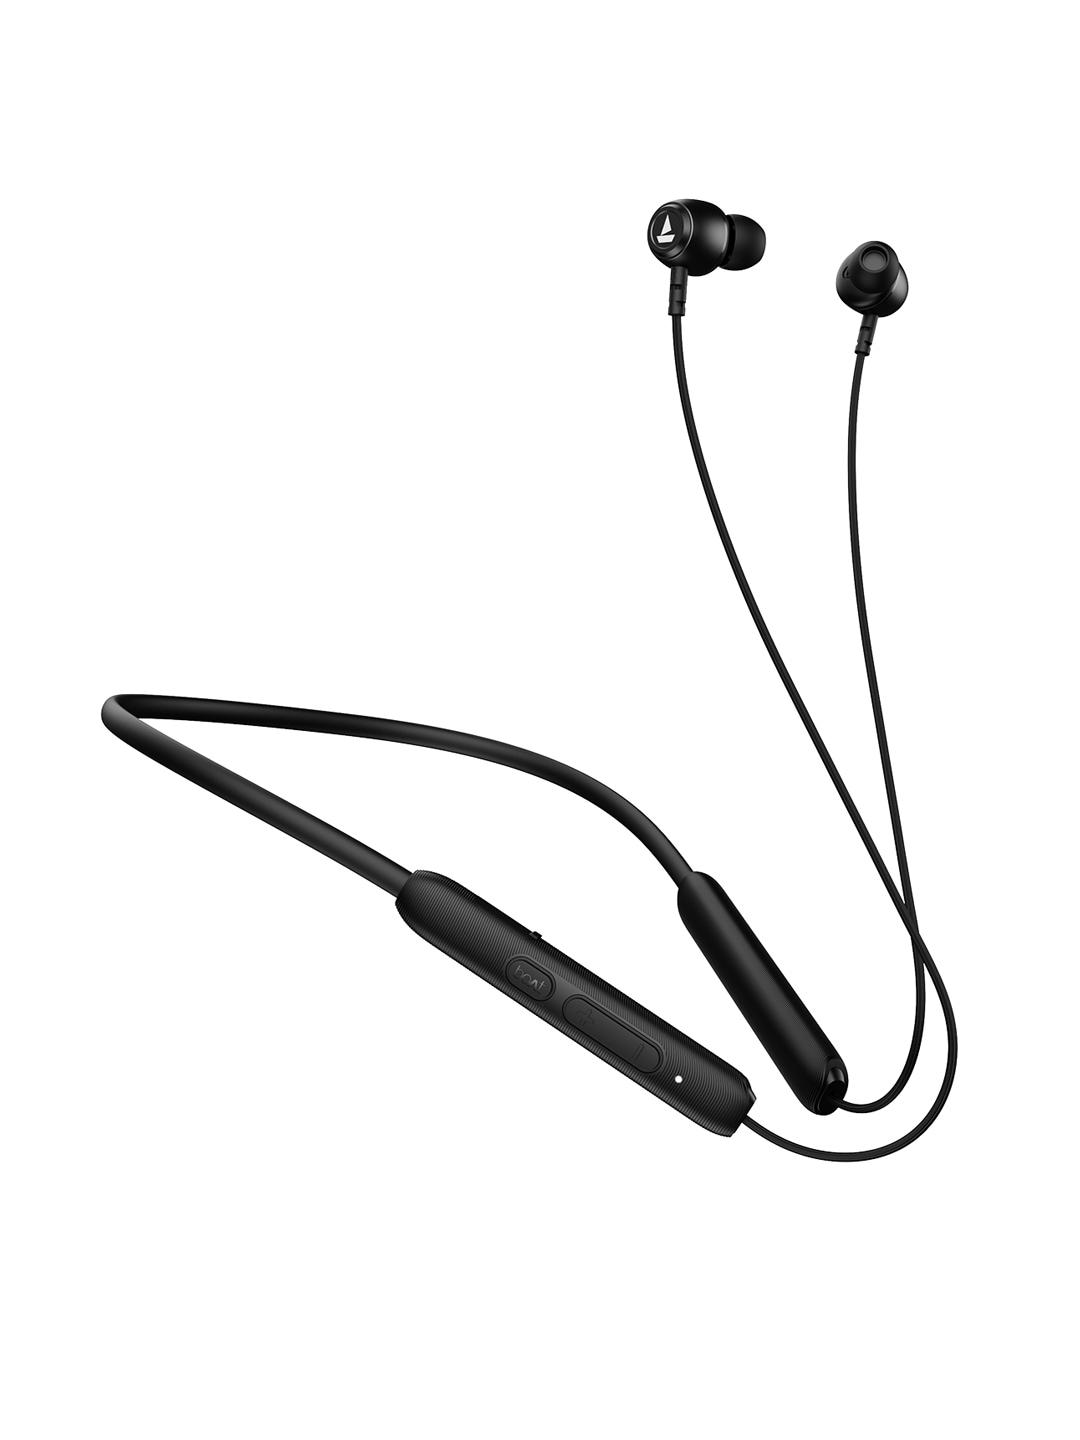 boat-rockerz-103v2-pro-wireless-earphones